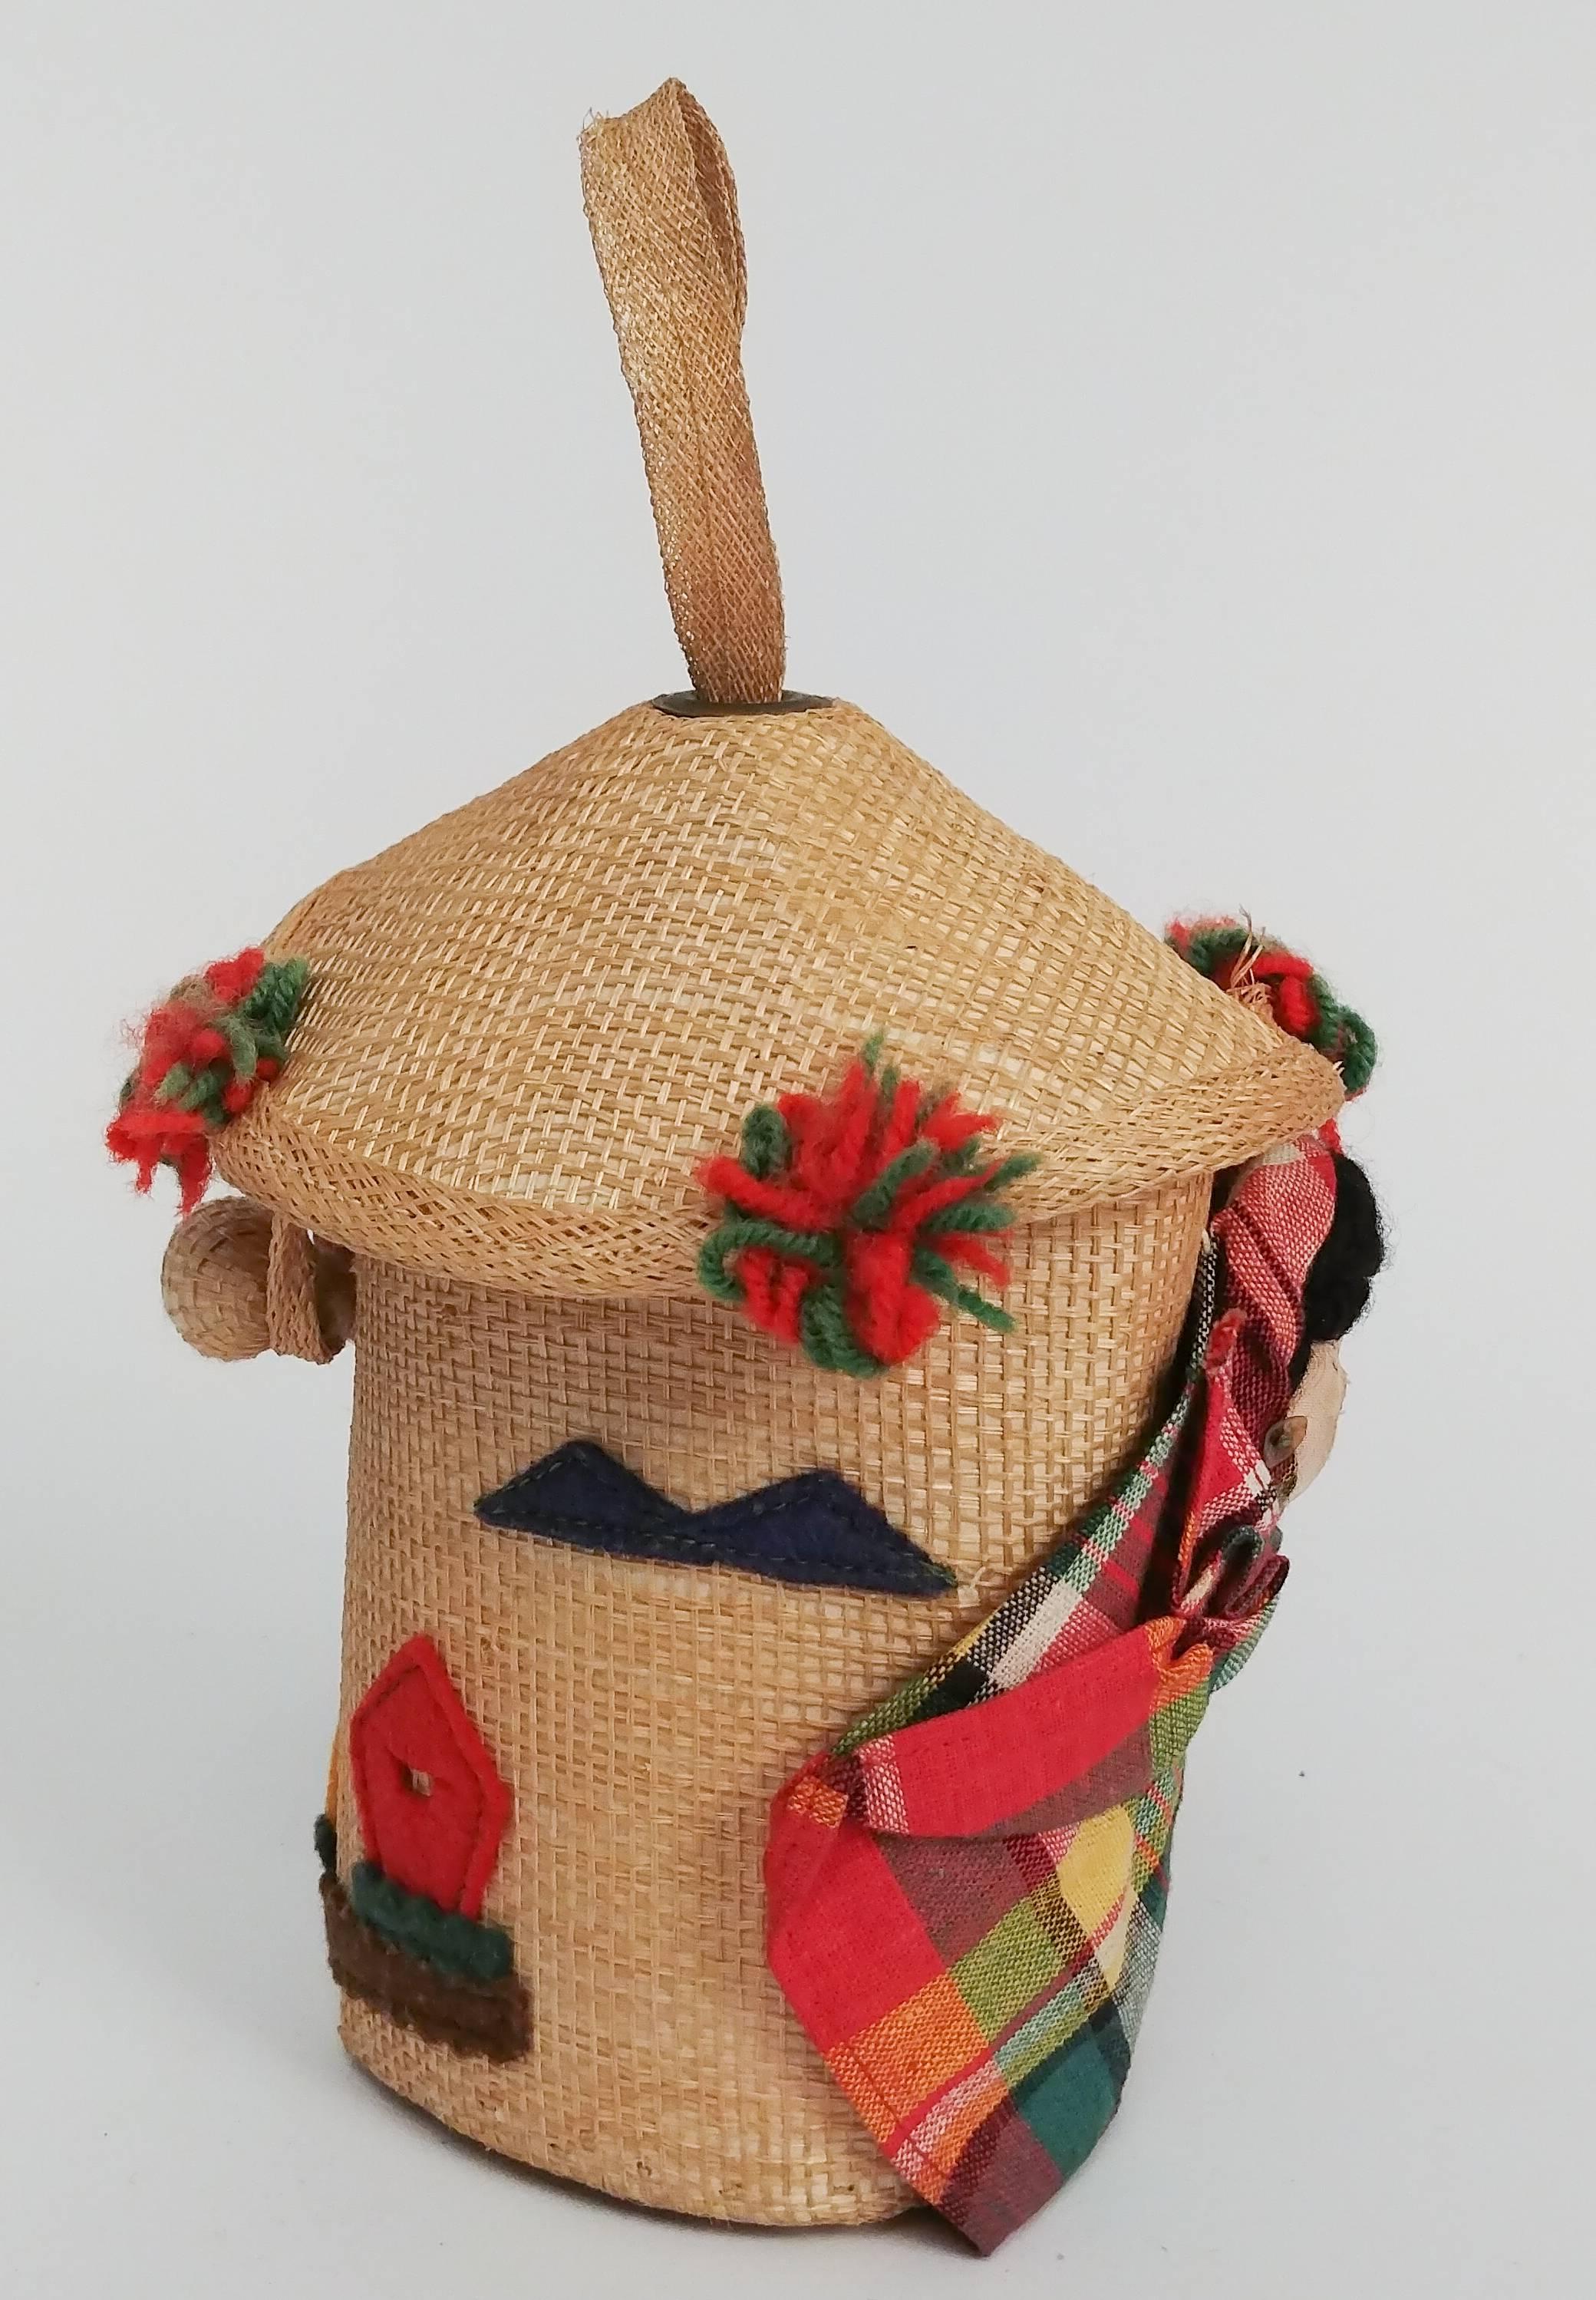 mexikanische Souvenir-Puppentasche aus den 1950er Jahren. Bezaubernde Mini-Tasche aus gewebtem Stroh mit skurrilen dreidimensionalen Details, darunter Pompons aus Garn, Filzlandschaften, Samen und eine eingewickelte Babypuppe. Lässt sich oben mit